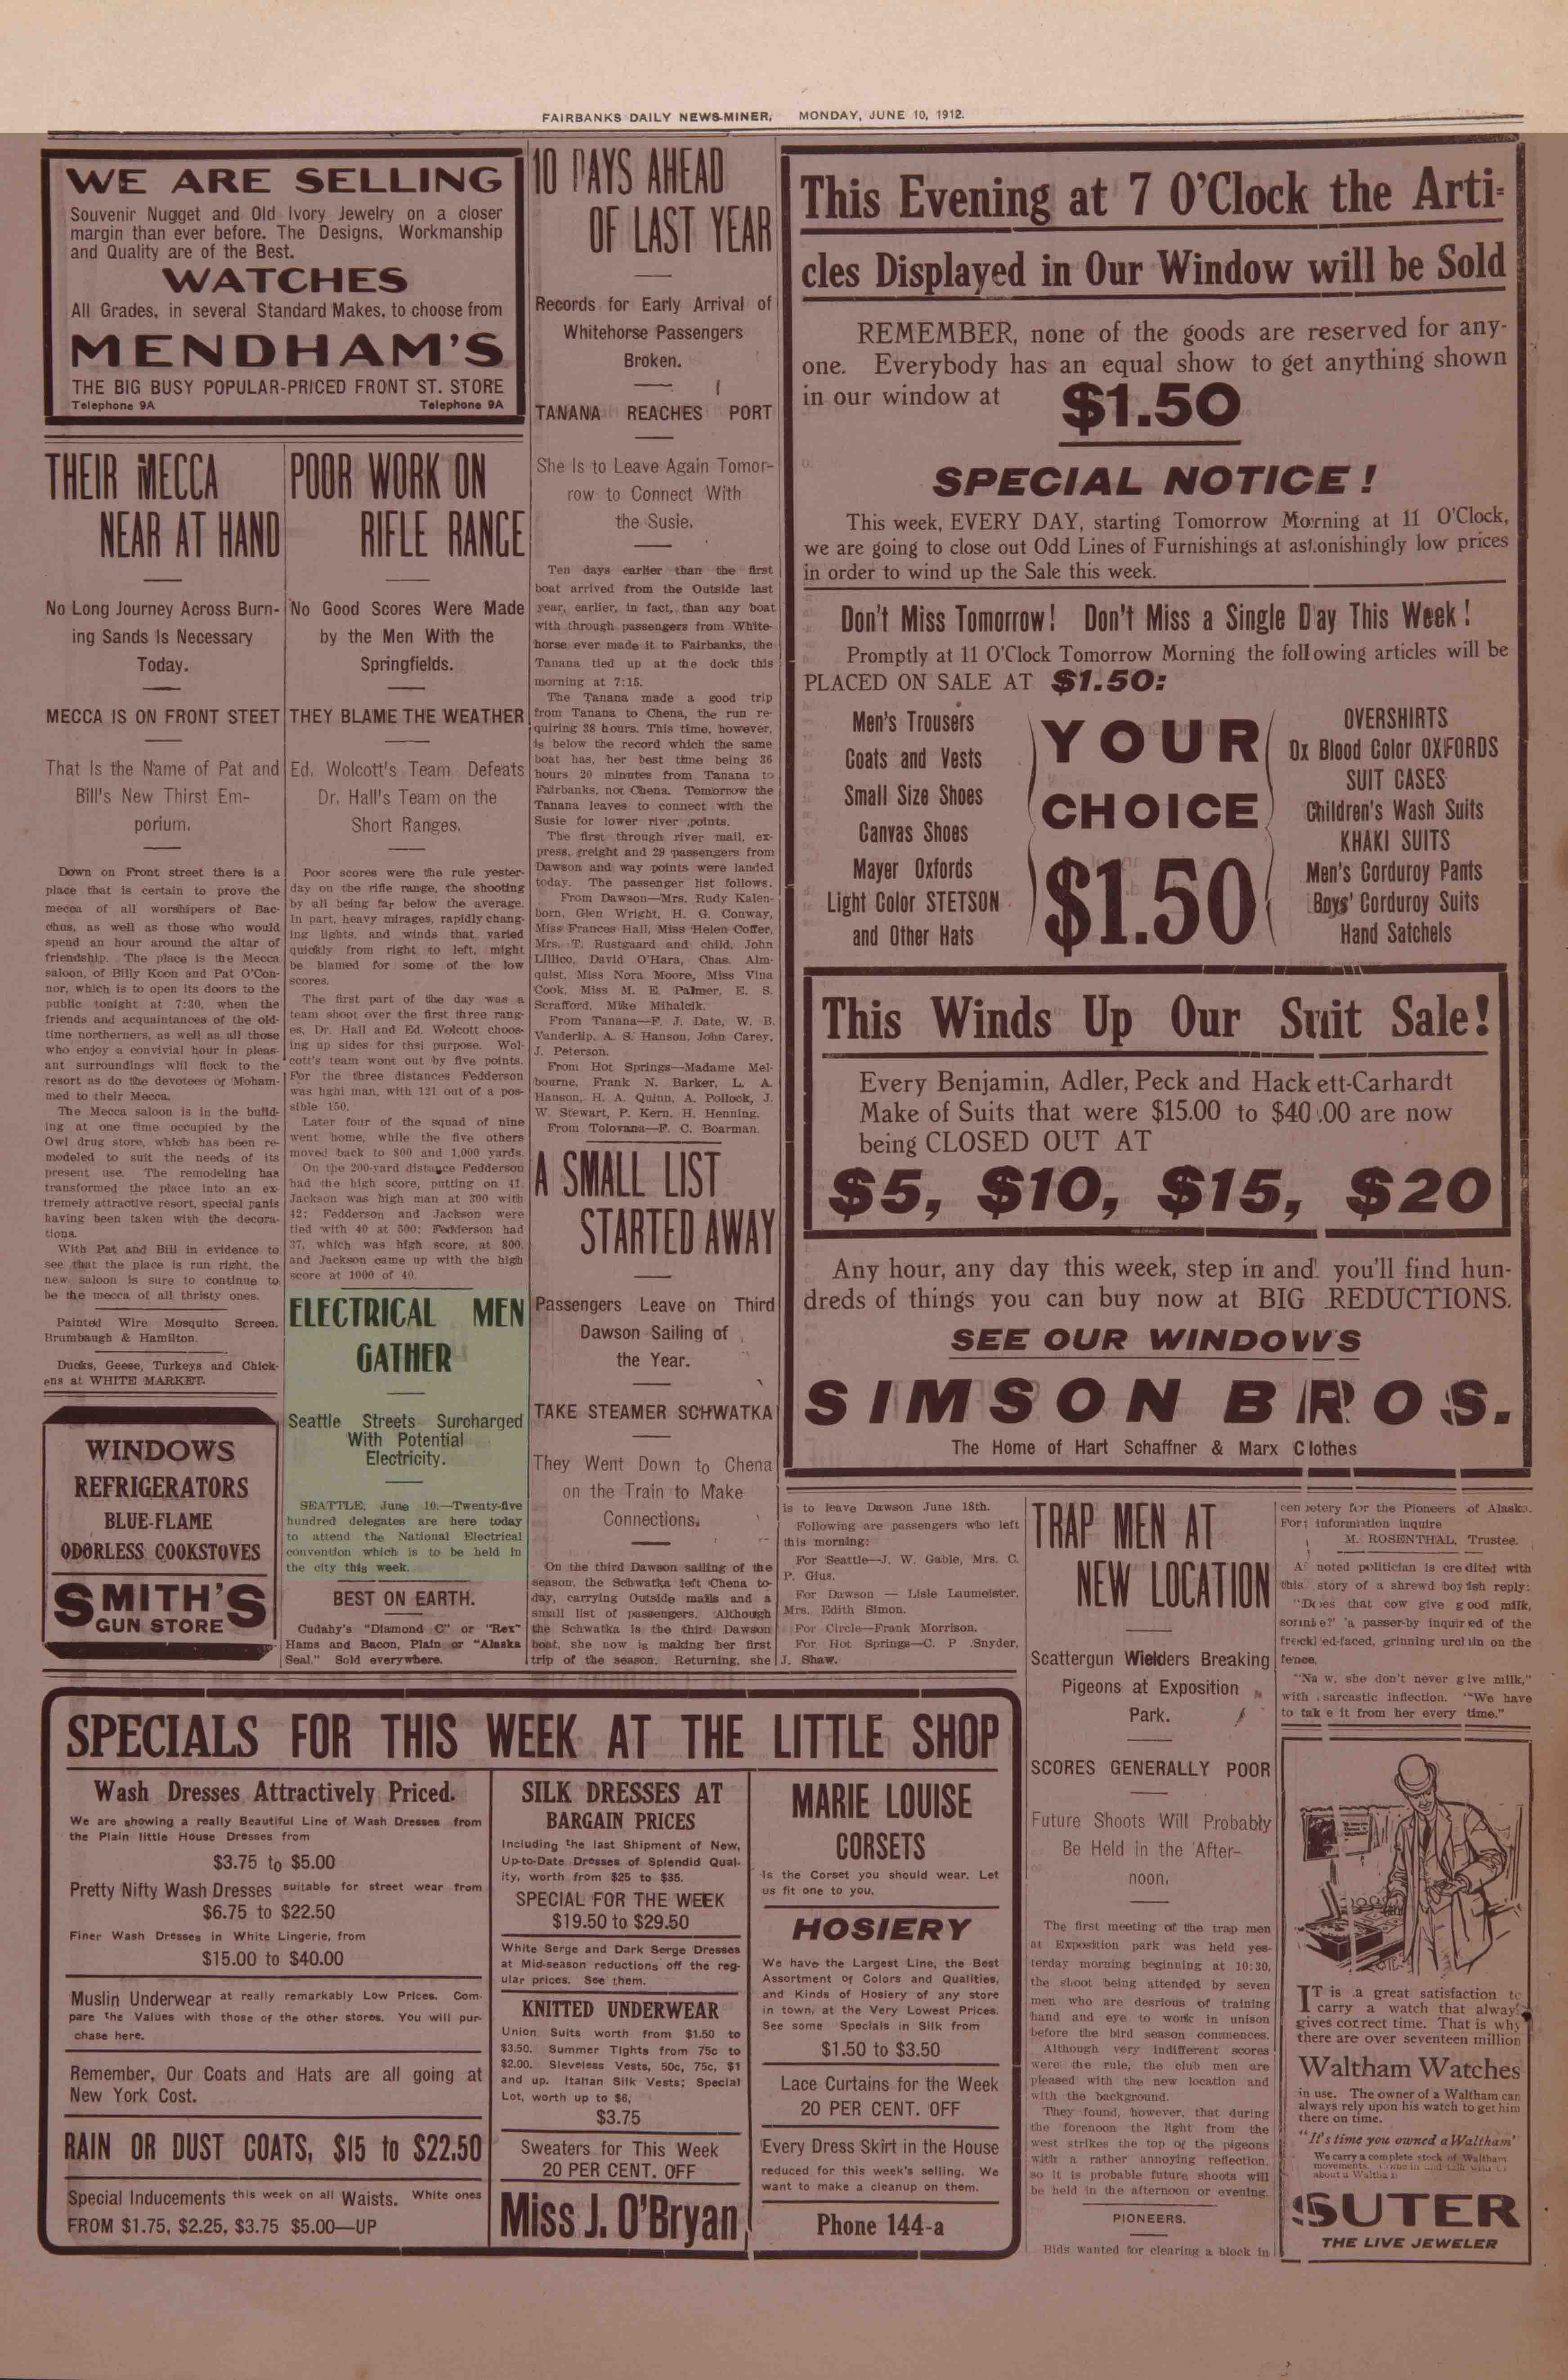 1912 June 10, Fairbanks Daily News-Miner (pg 4)